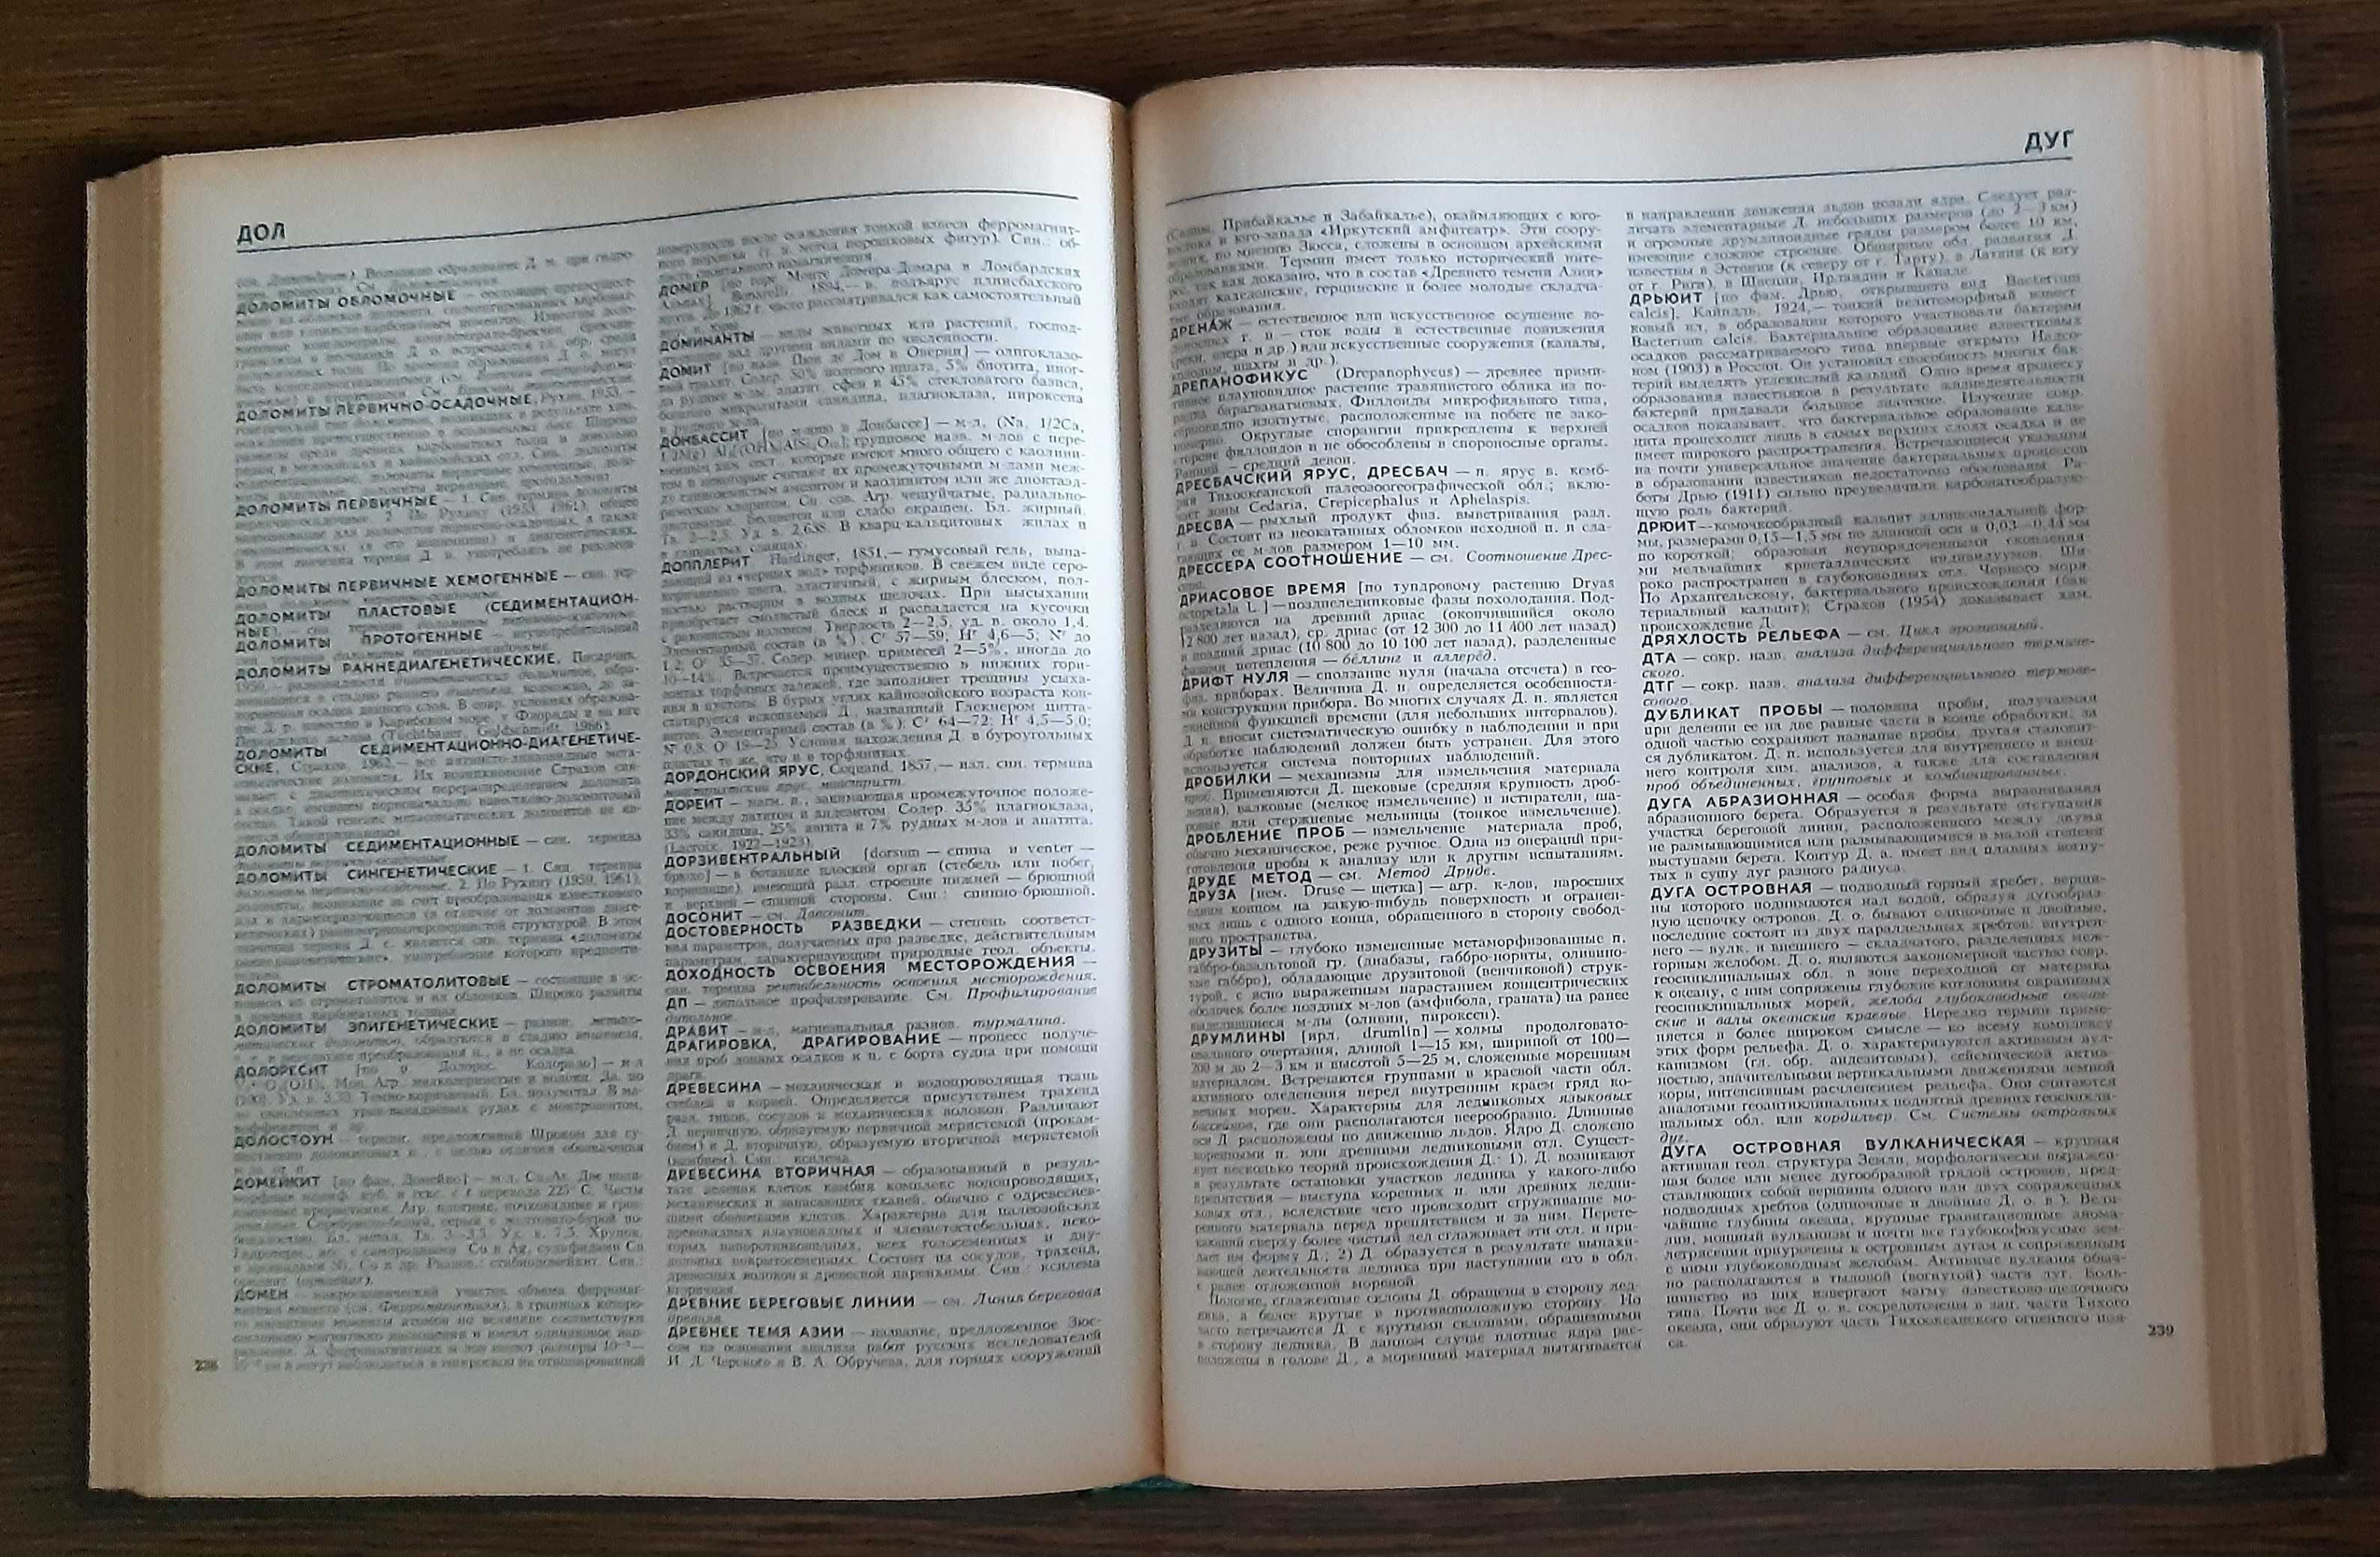 Słownik geologiczny w dwóch tomach - tom 1 i 2